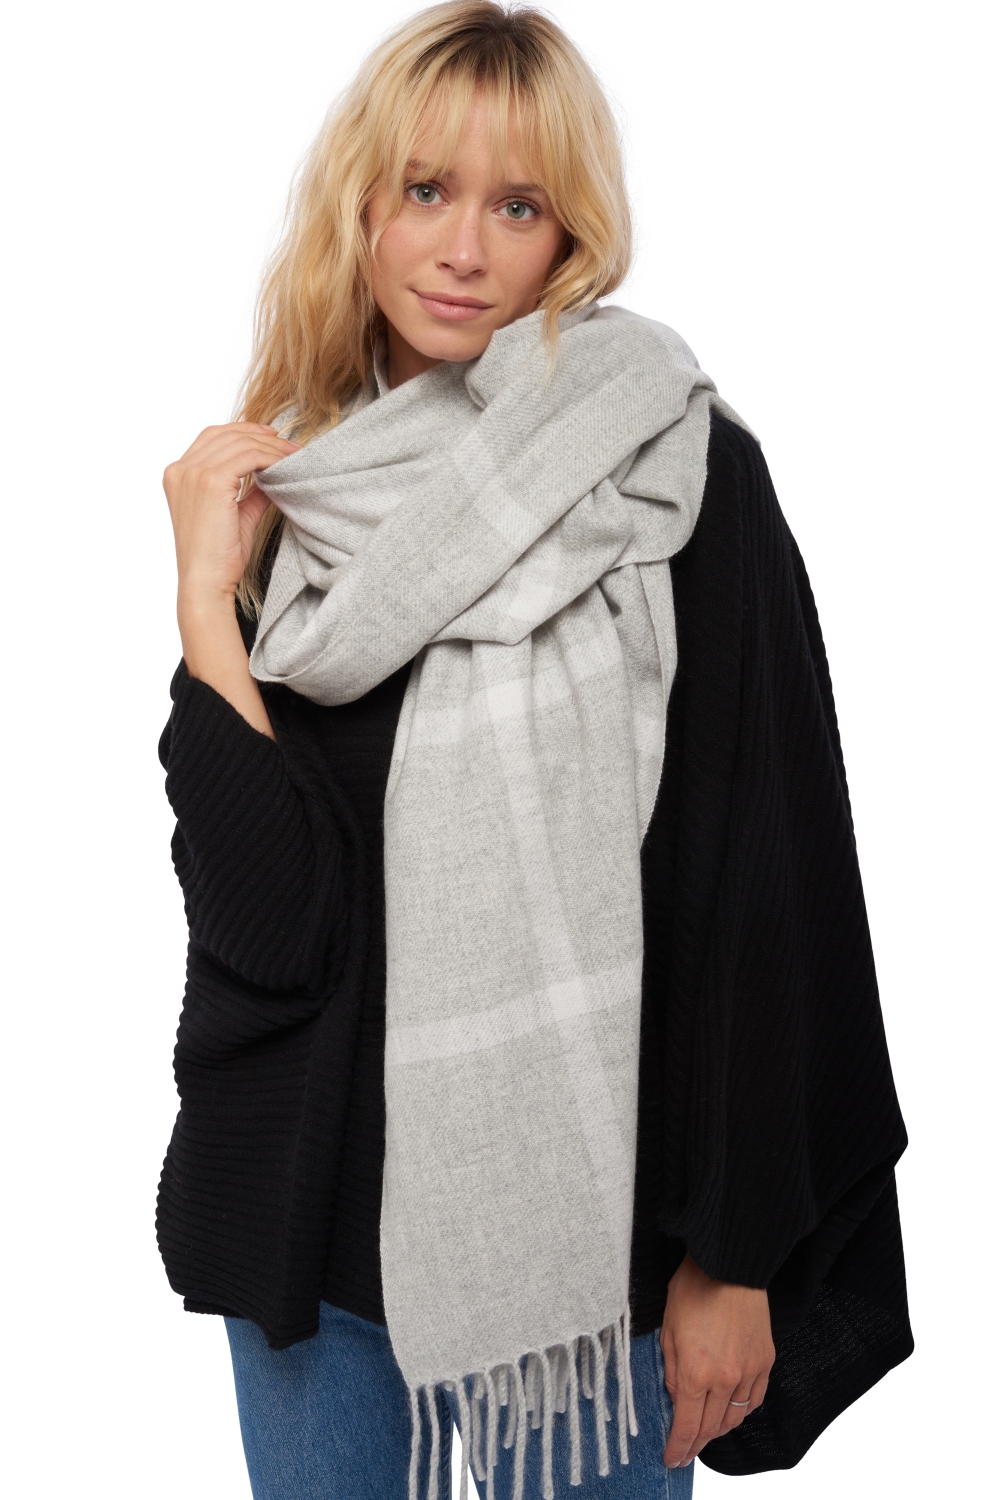 Cashmere accessories scarves mufflers venezia flanelle chine off white 210 x 90 cm